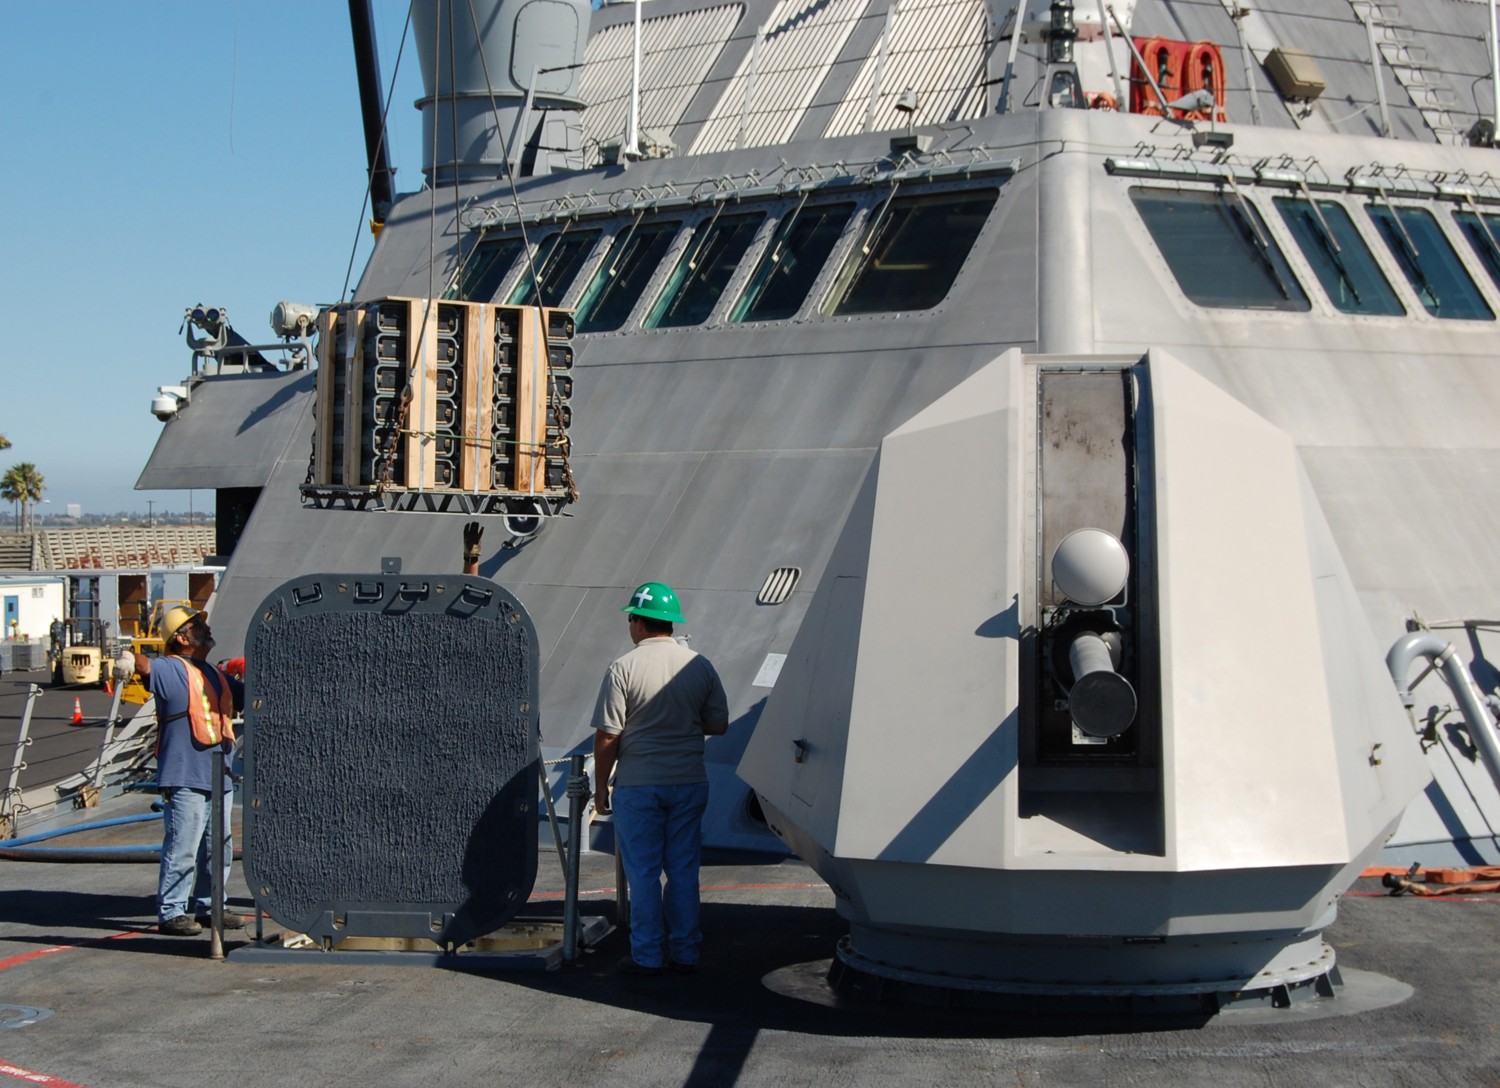 lcs-1 uss freedom class littoral combat ship us navy 68 mk.110 gun 57mm ammunition onload